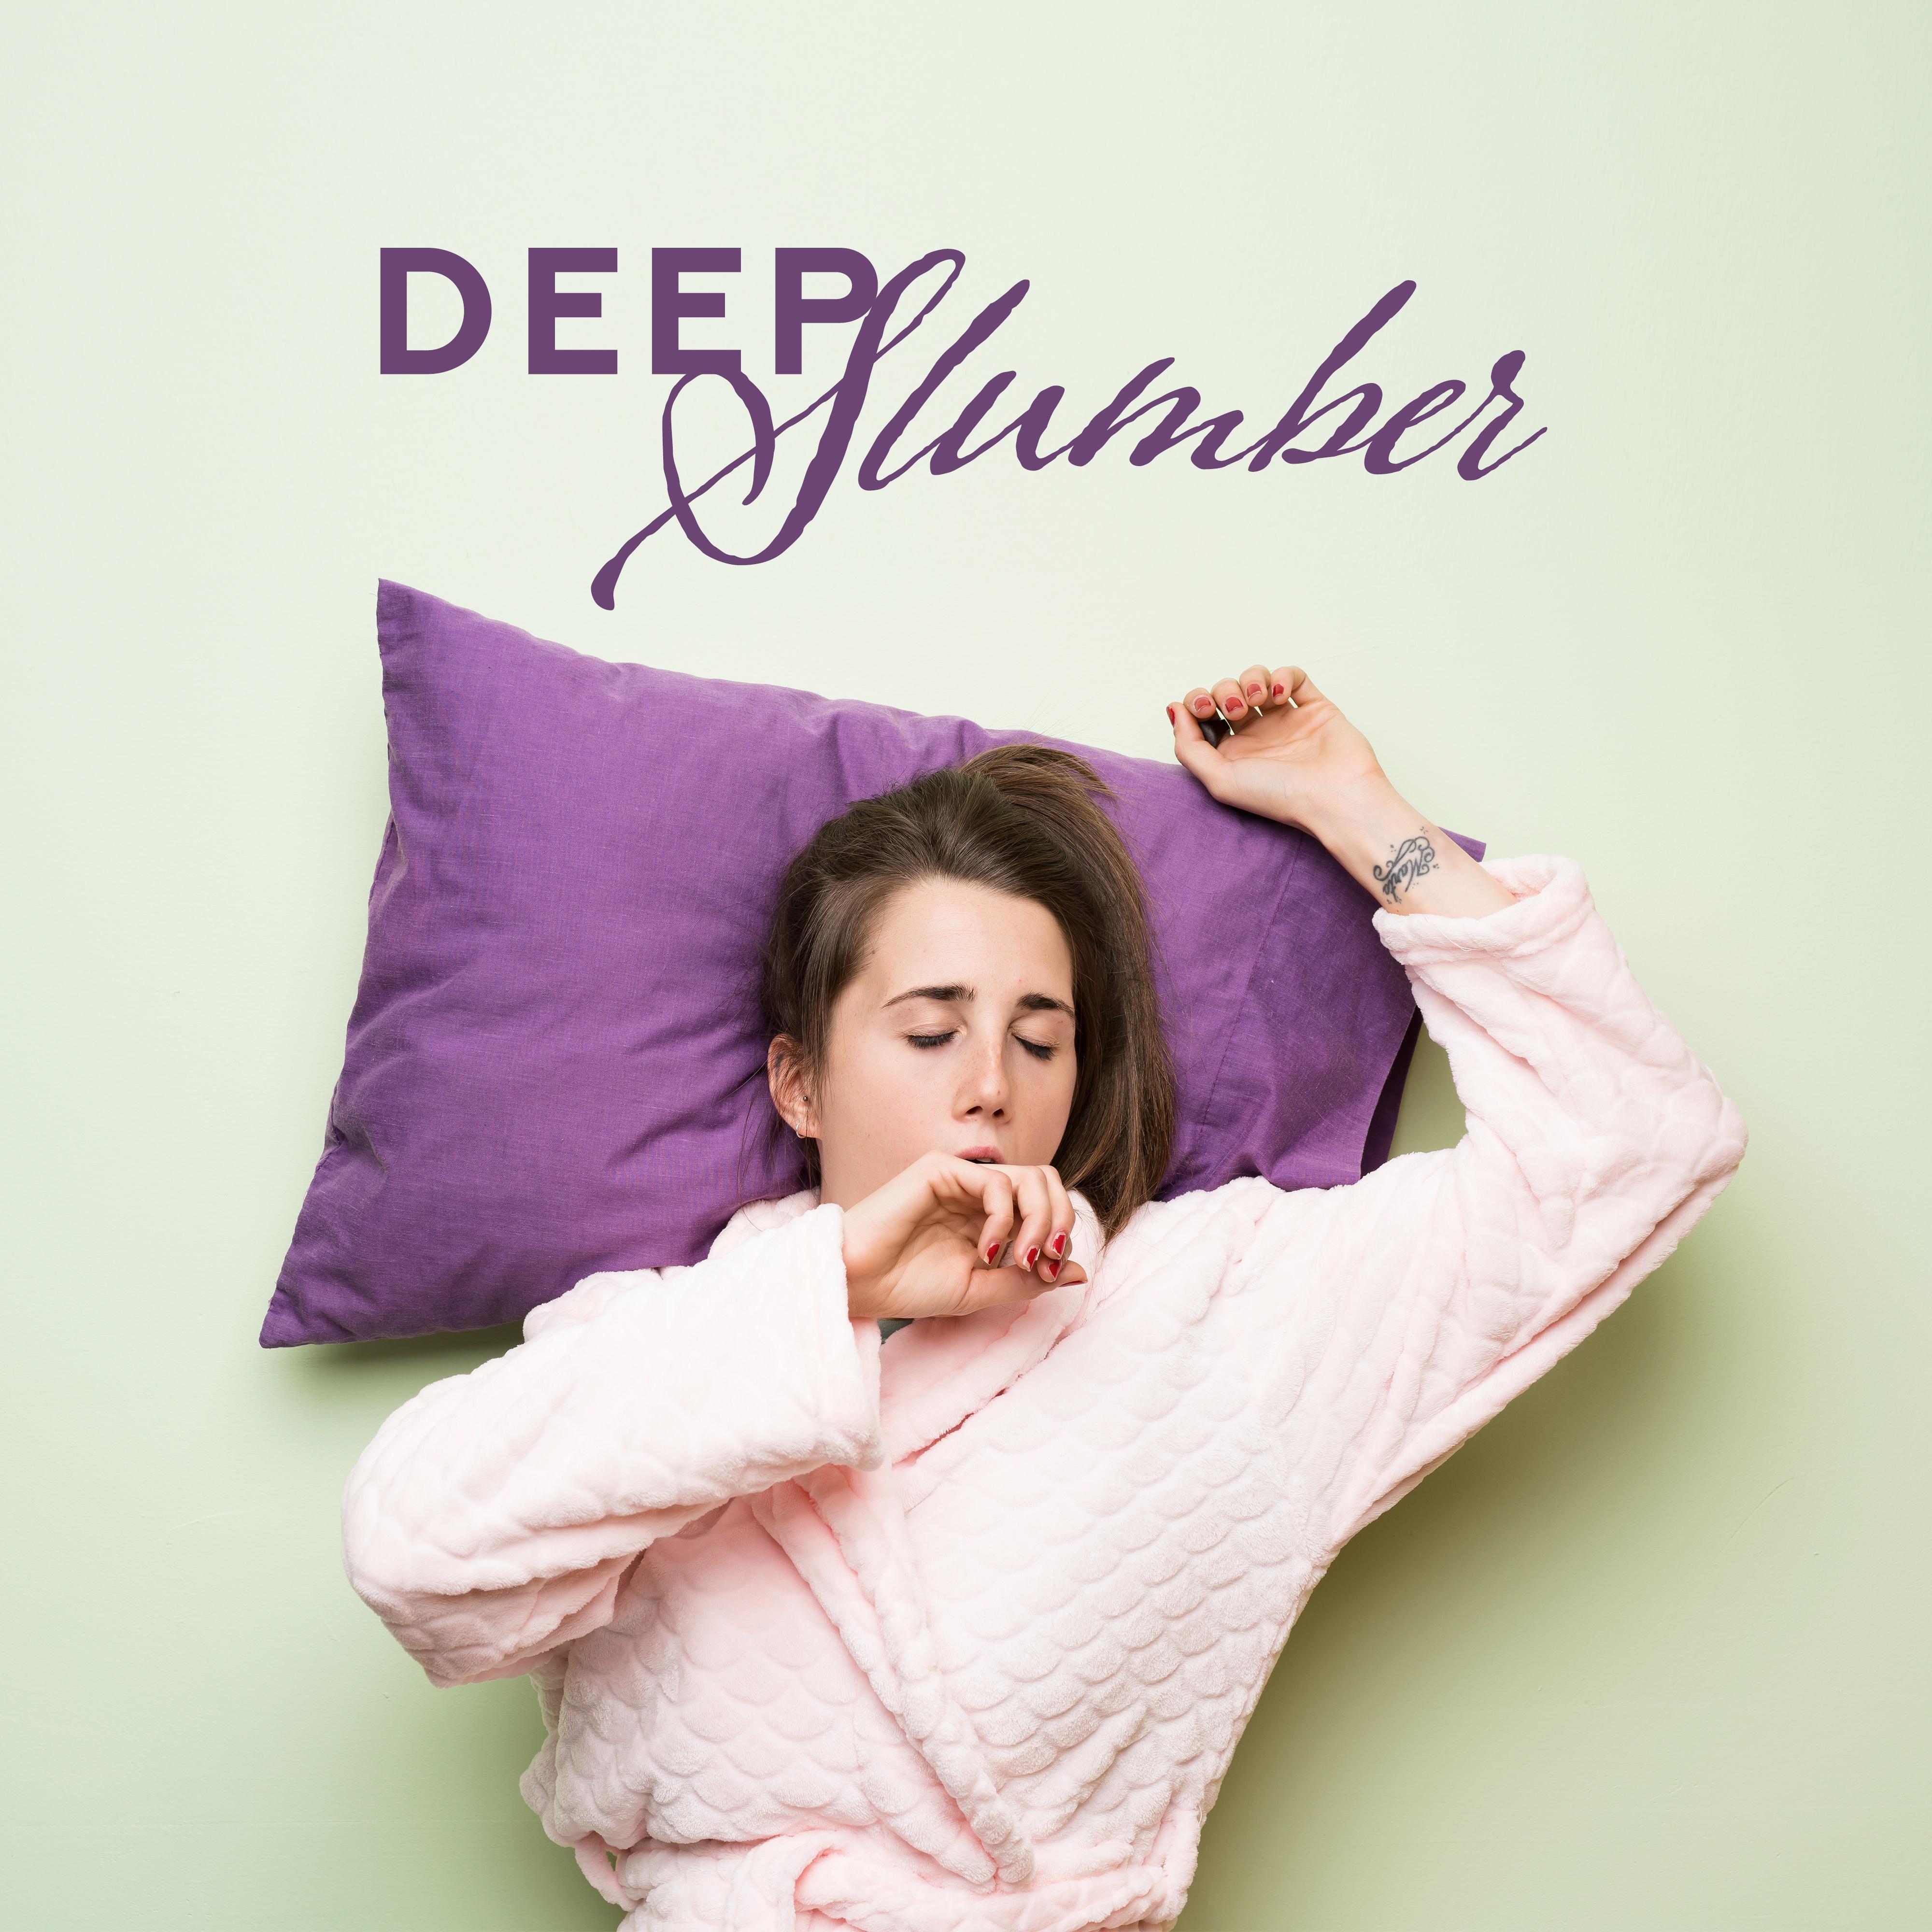 Deep Slumber: Healing Music for Relaxation, Sleep, Rest, Night Music, Relaxing Lullabies